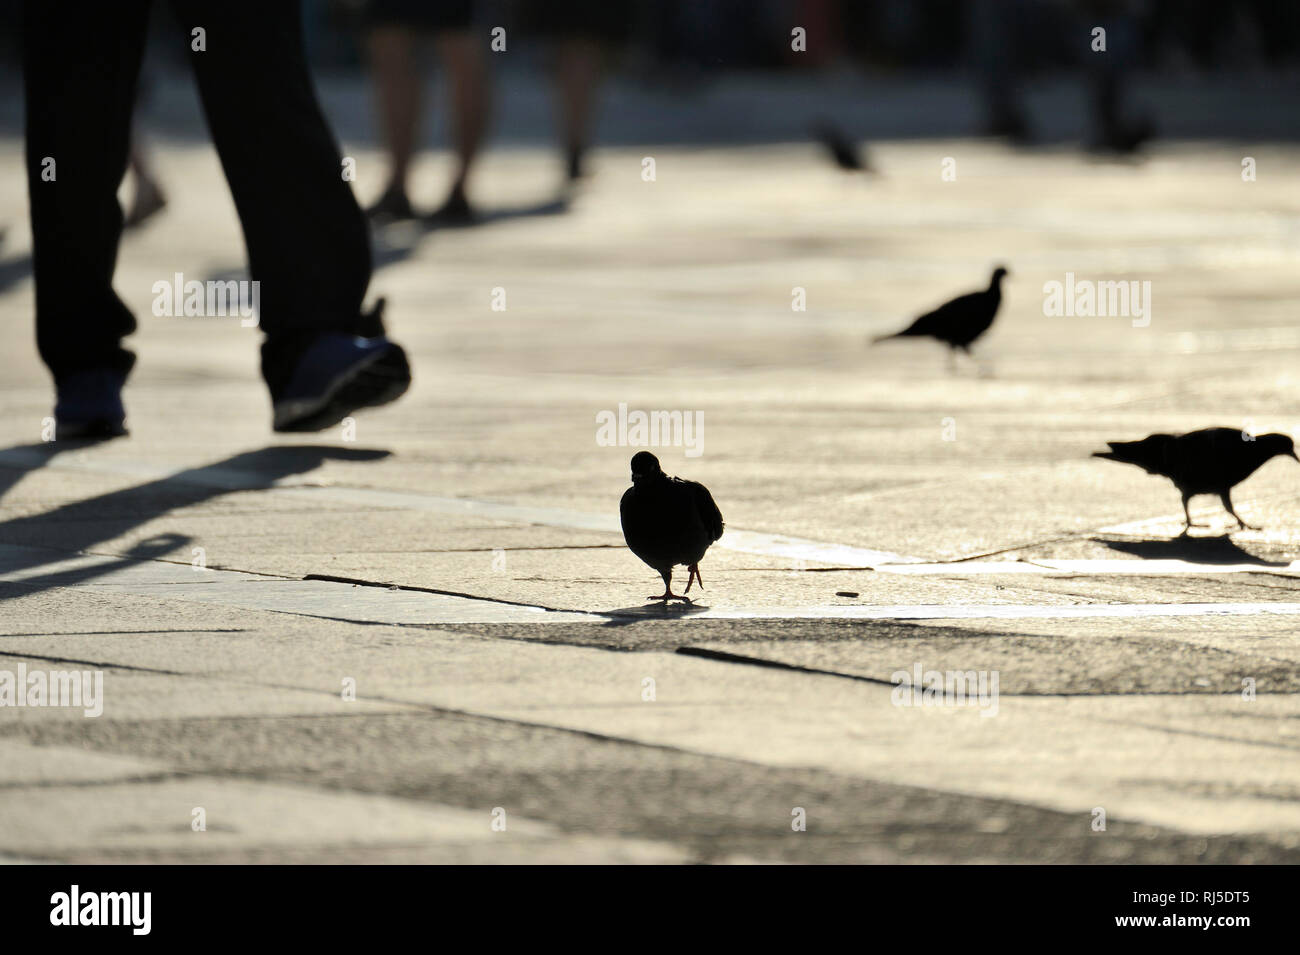 Tauben auf dem Markusplatz zwischen Touristen, Piazza San Marco in Venedig Stock Photo